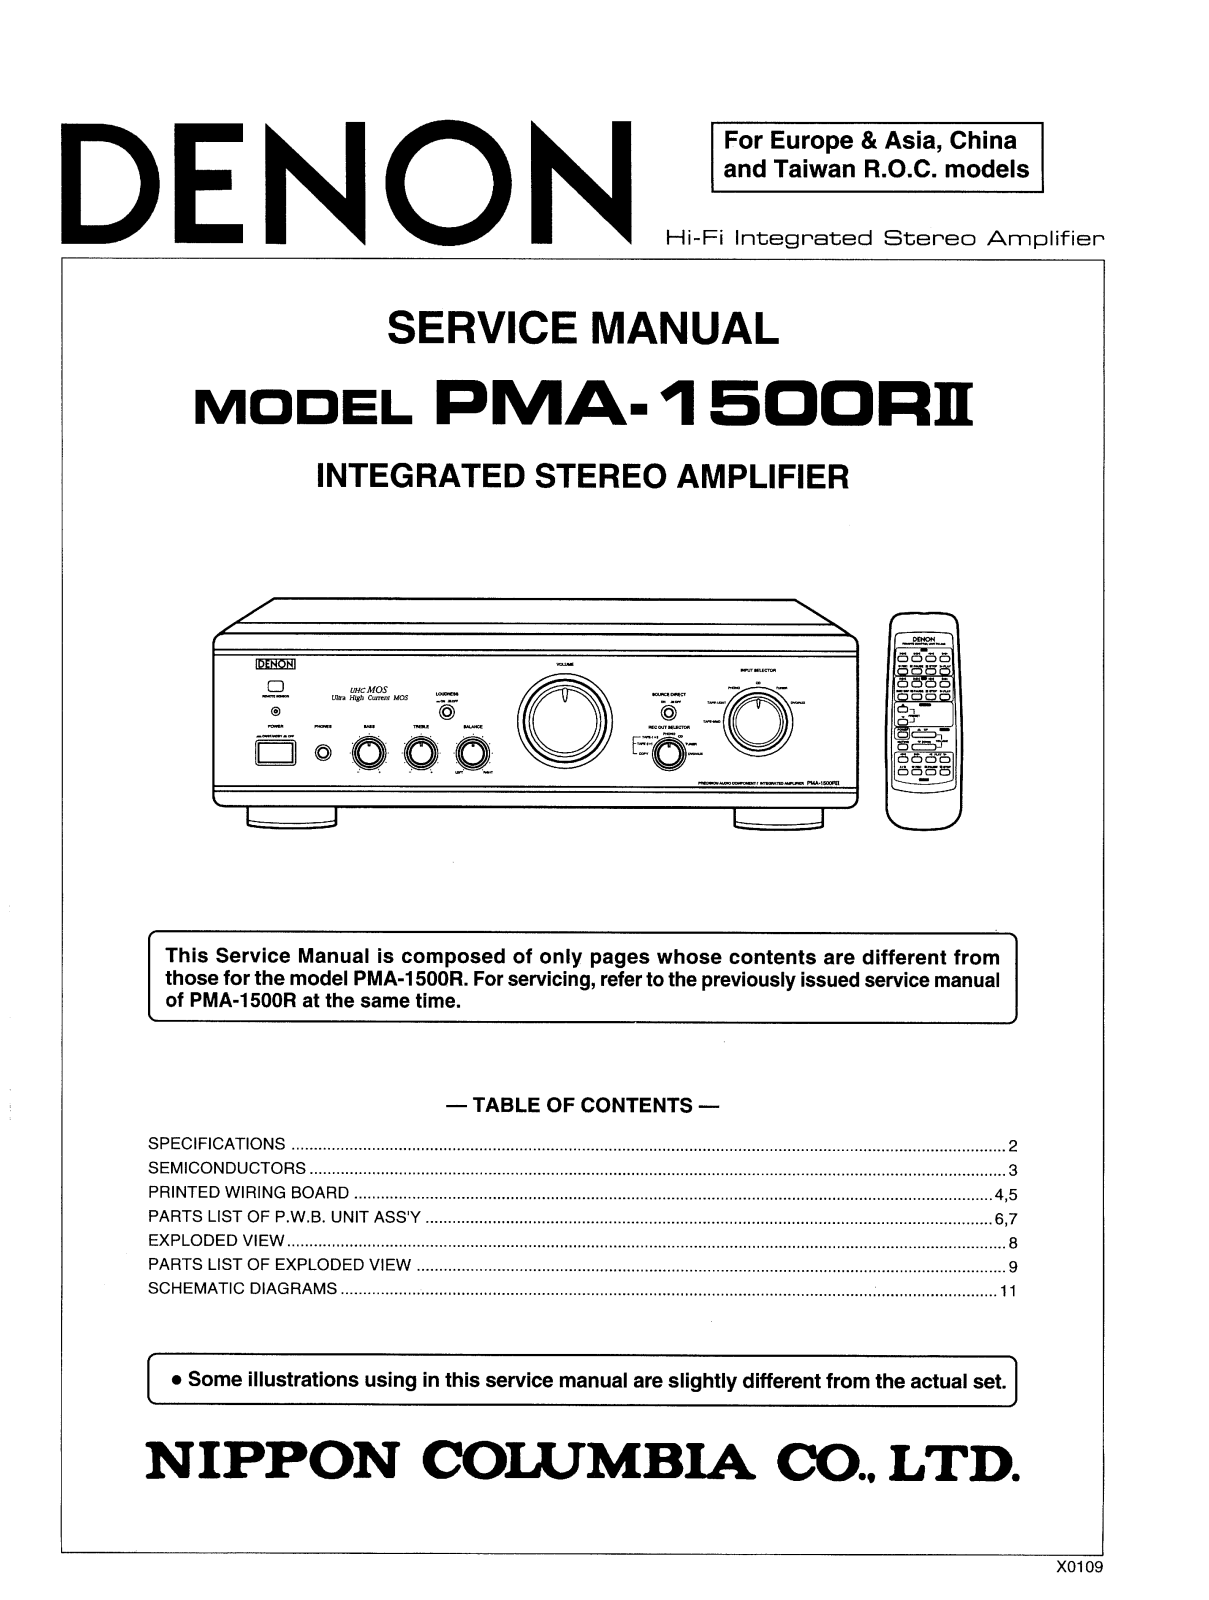 Denon PMA-1500RII Service Manual